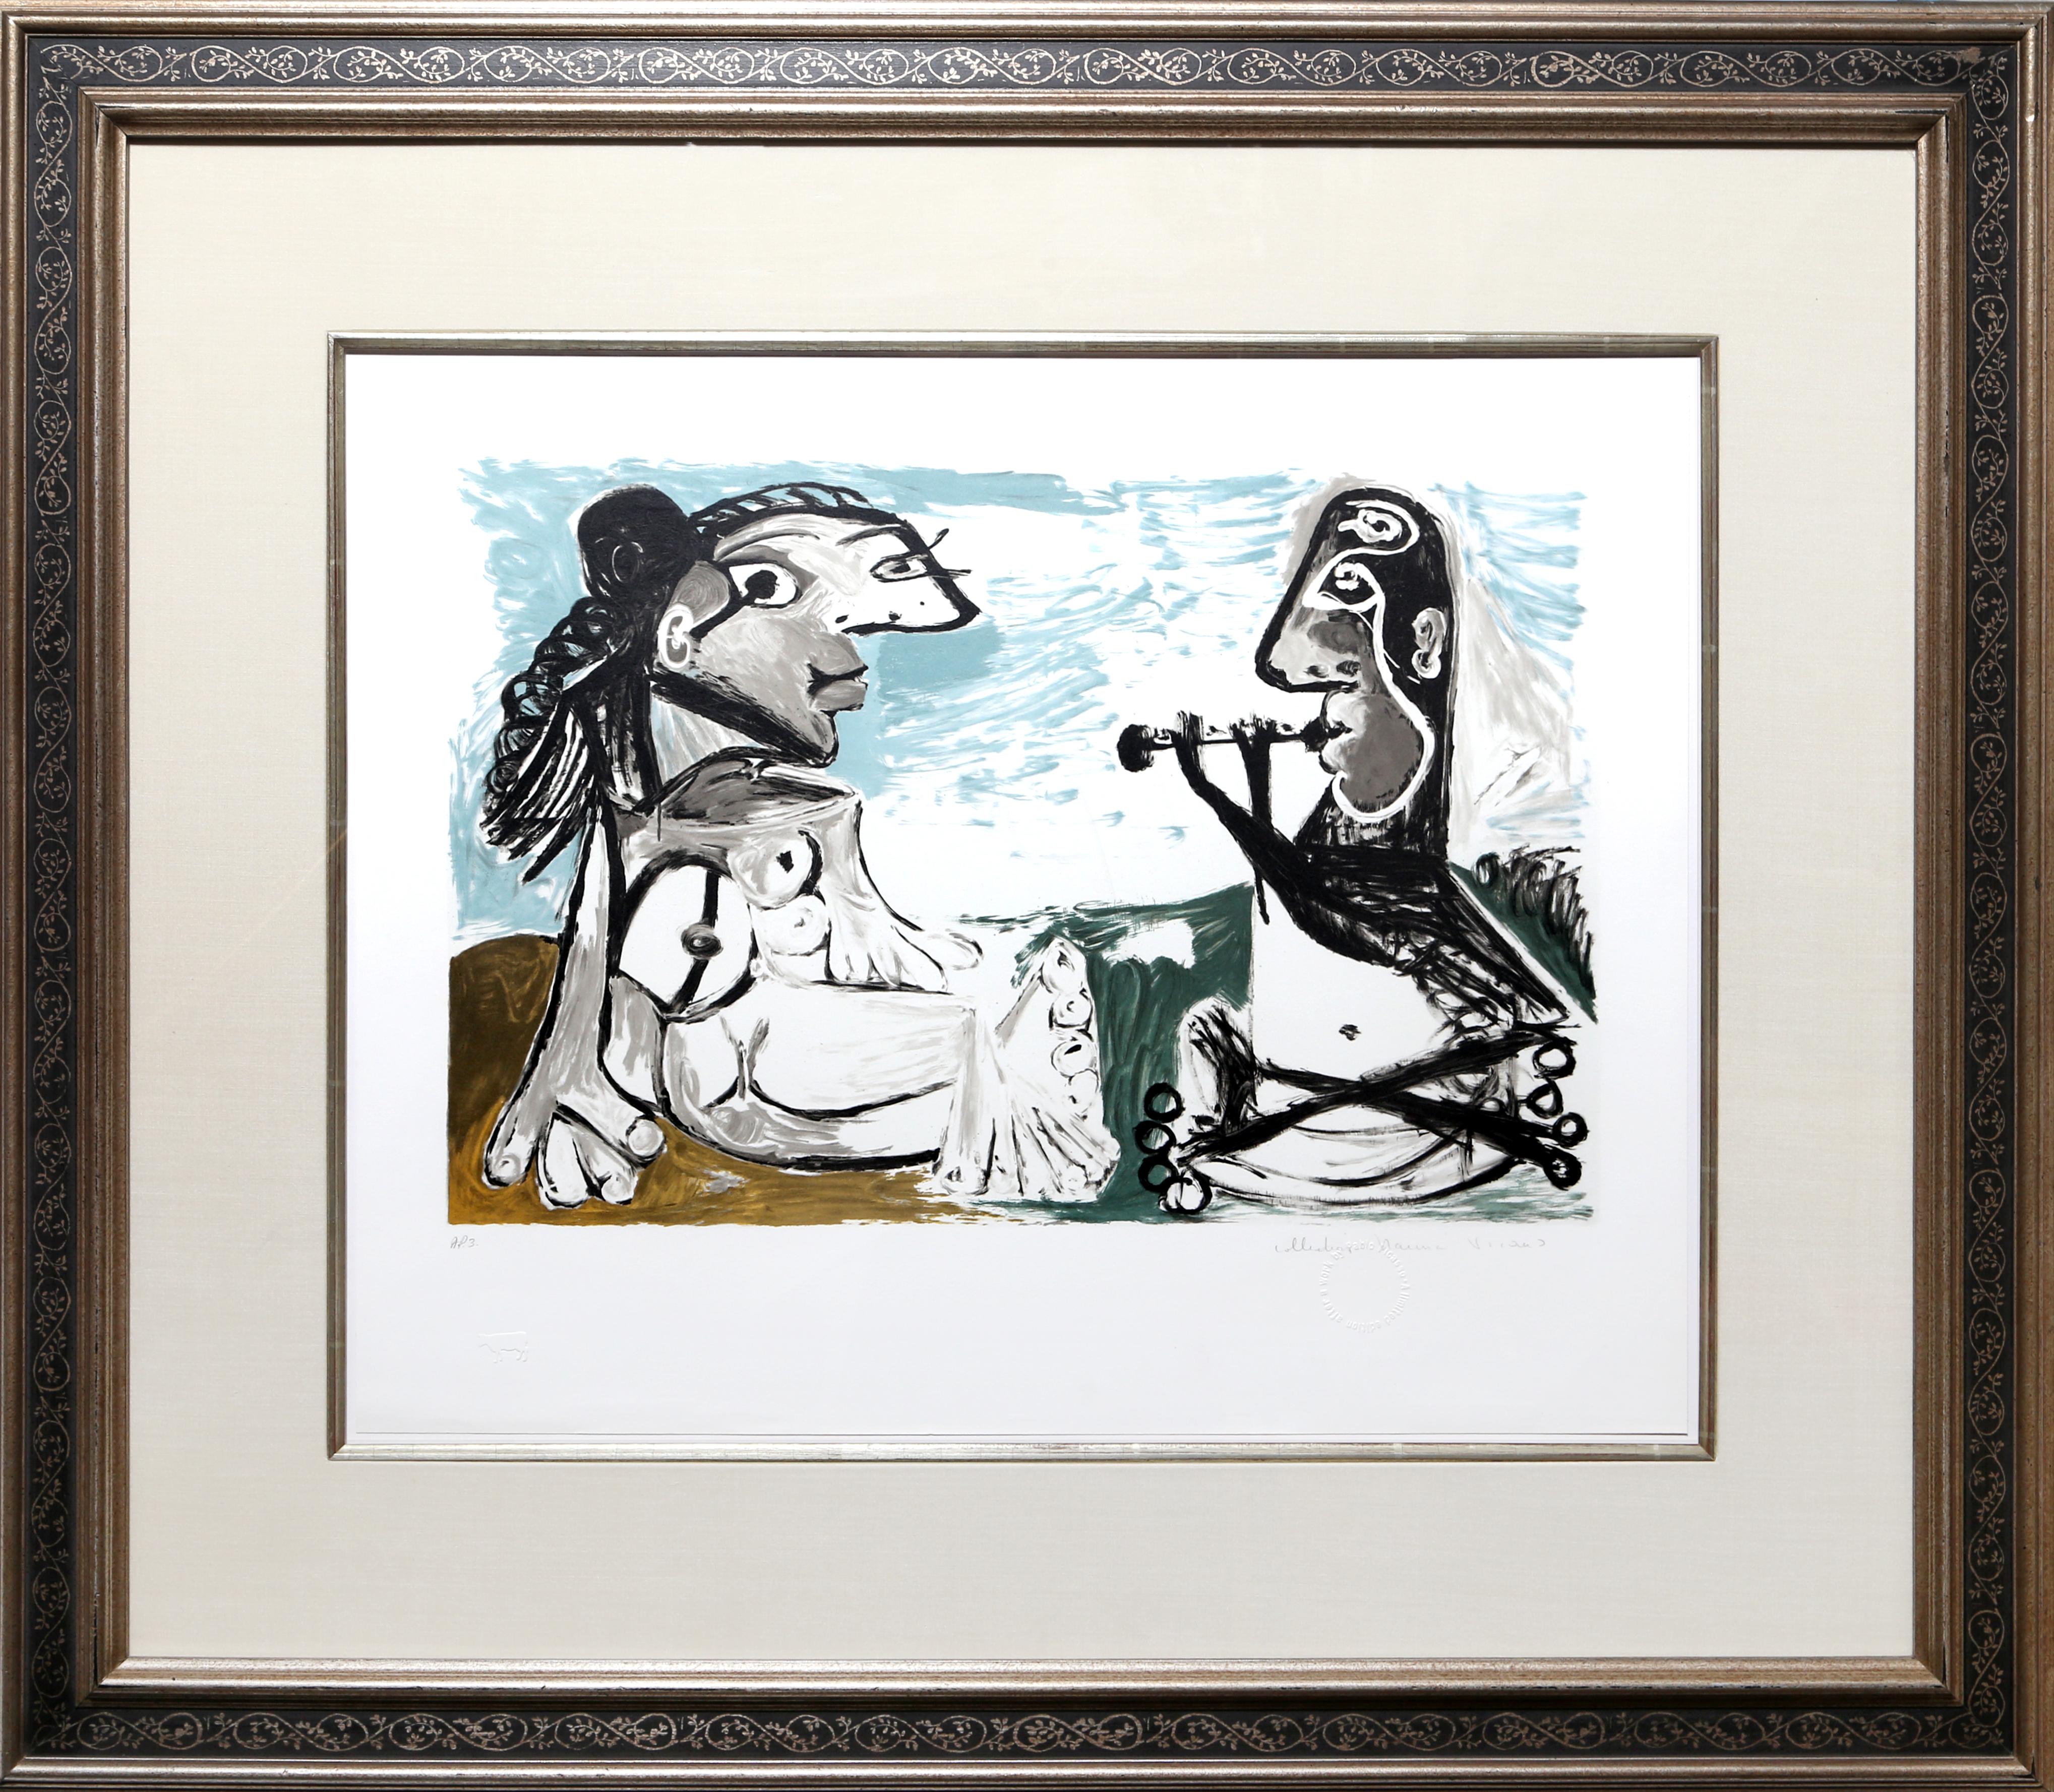 Eine Lithographie aus der Nachlasssammlung Marina Picasso nach dem Gemälde "Femme Assise et Joueur de Flute" von Pablo Picasso.  Das Originalgemälde wurde 1967 fertiggestellt. In den 1970er Jahren, nach Picassos Tod, autorisierte Marina Picasso,